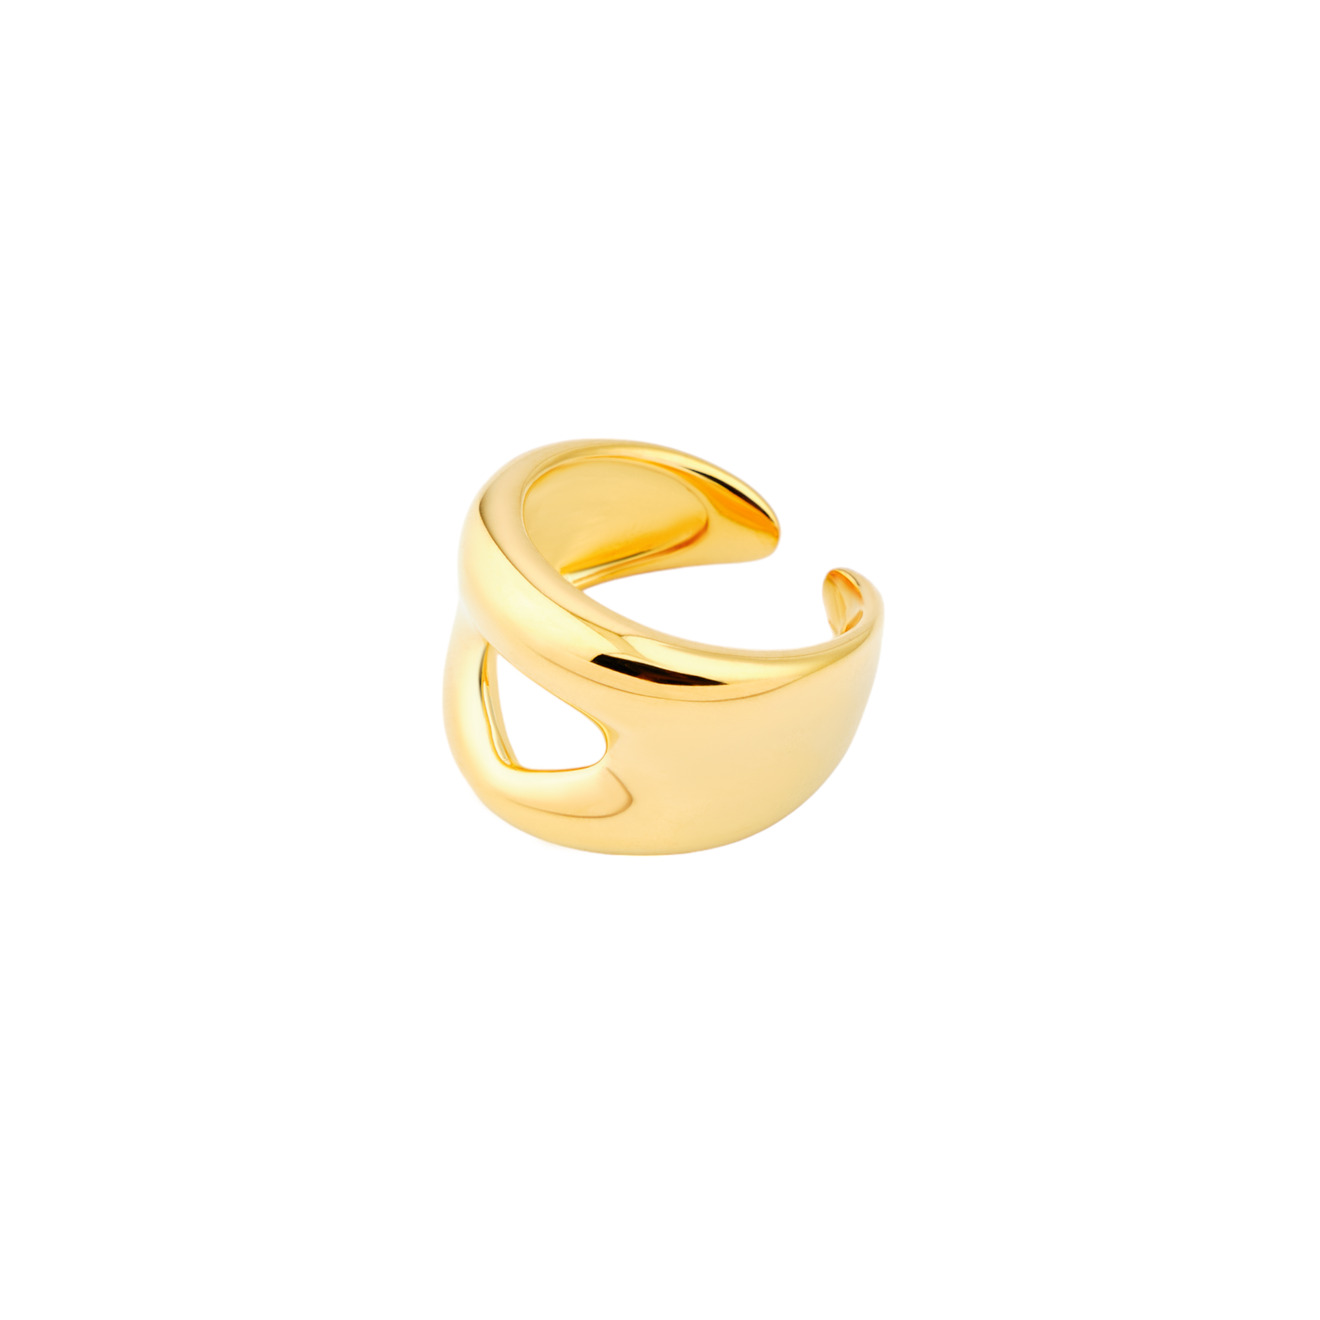 Philippe Audibert Позолоченное кольцо Edia philippe audibert кольцо edia с серебряным покрытием